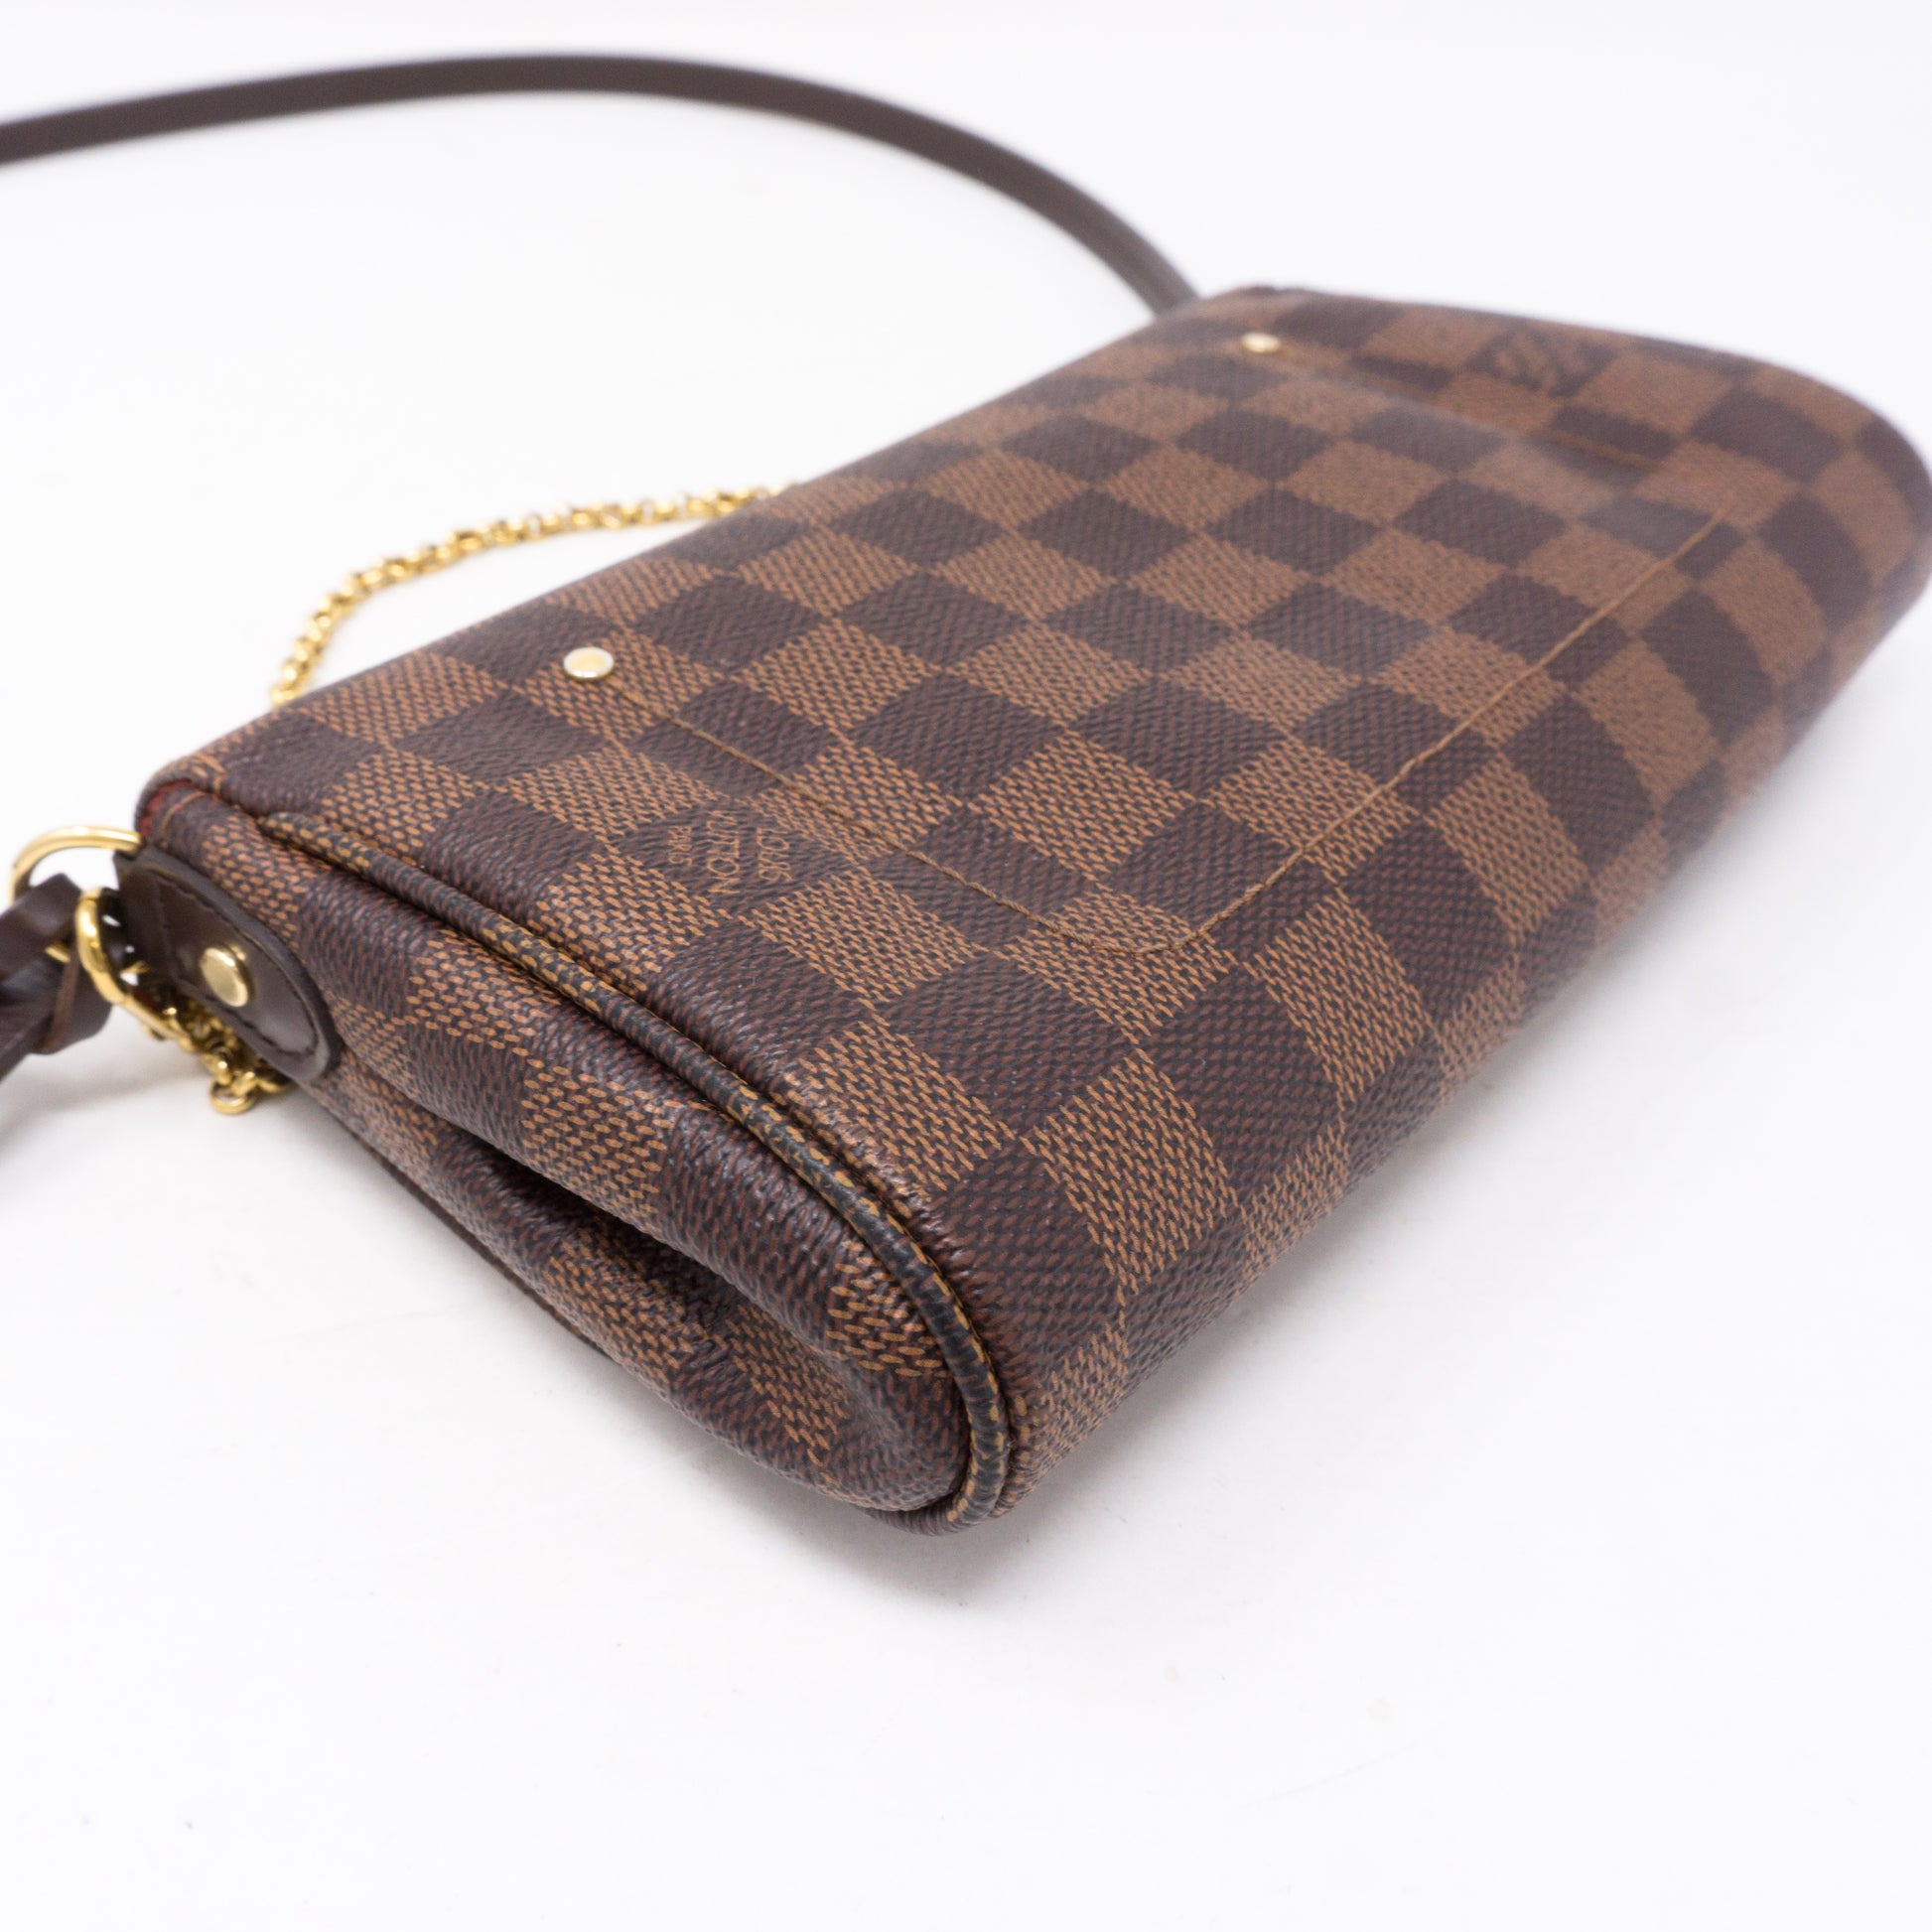 Louis Vuitton Favorite Handbag Damier PM at 1stDibs